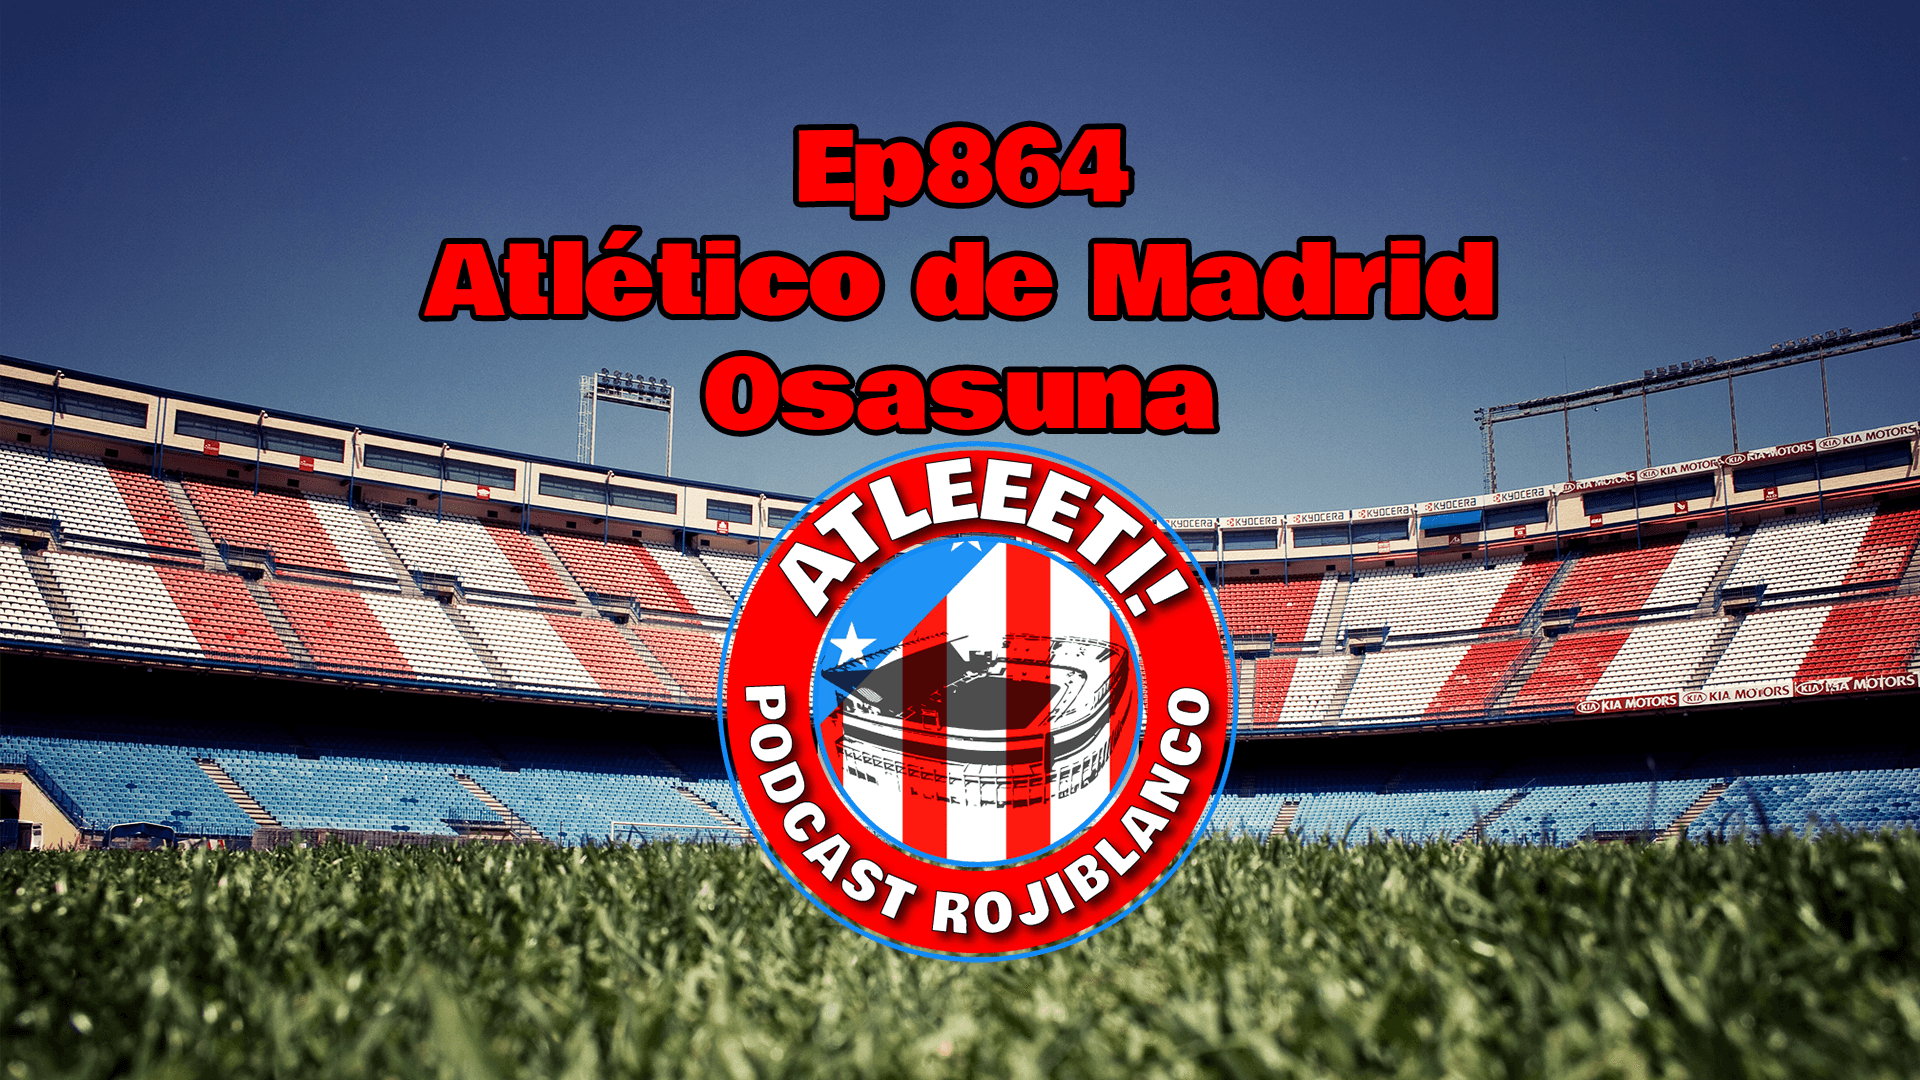 Ep864: Atlético de Madrid 3-0 Osasuna